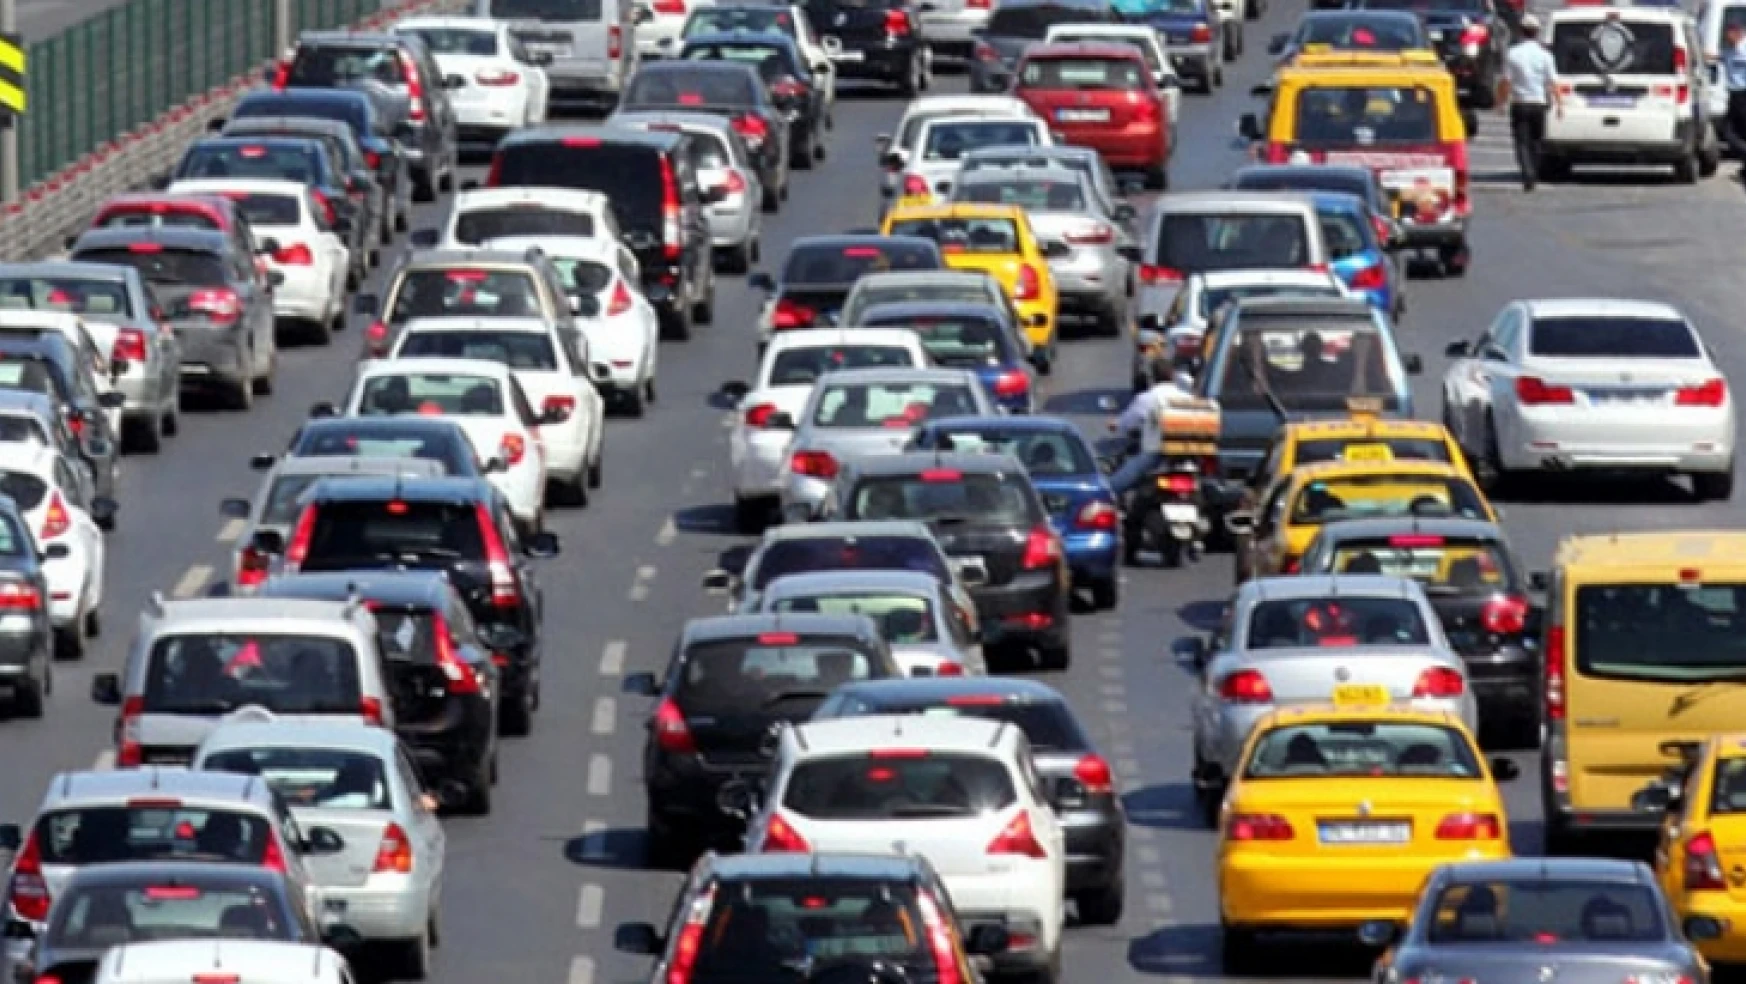 Malatya'da trafiğe kayıtlı motorlu taşıt sayısı 160 bin 8'e ulaştı.